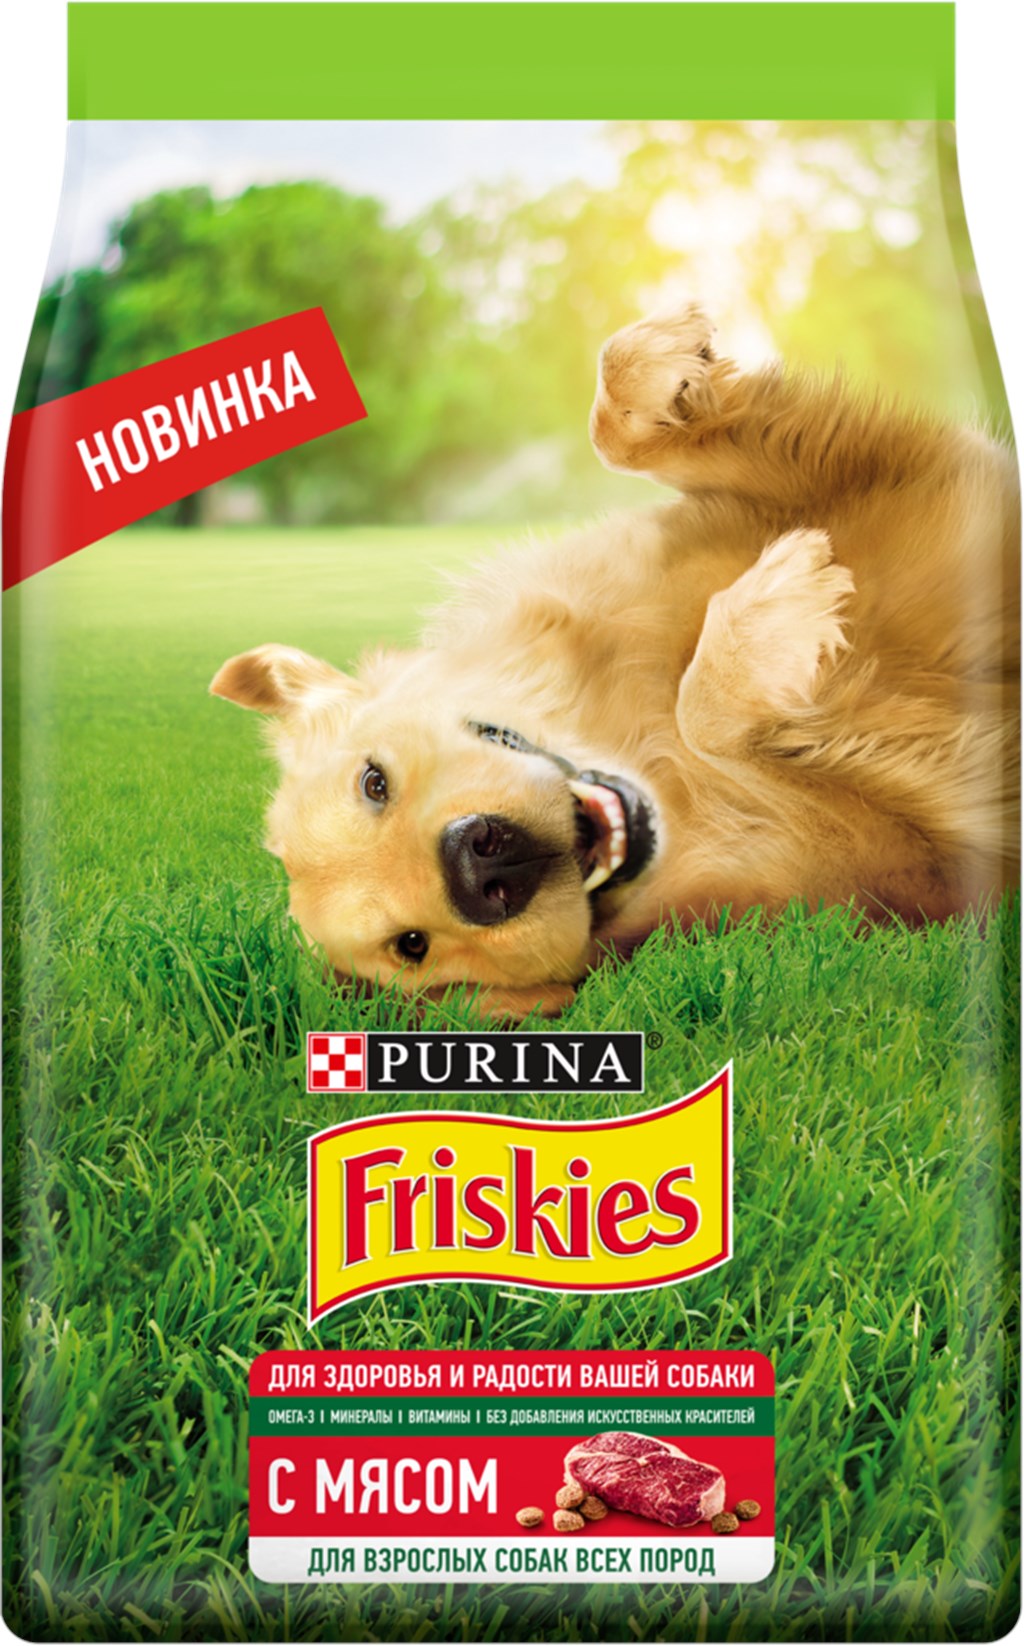 фрискис пурина для собак